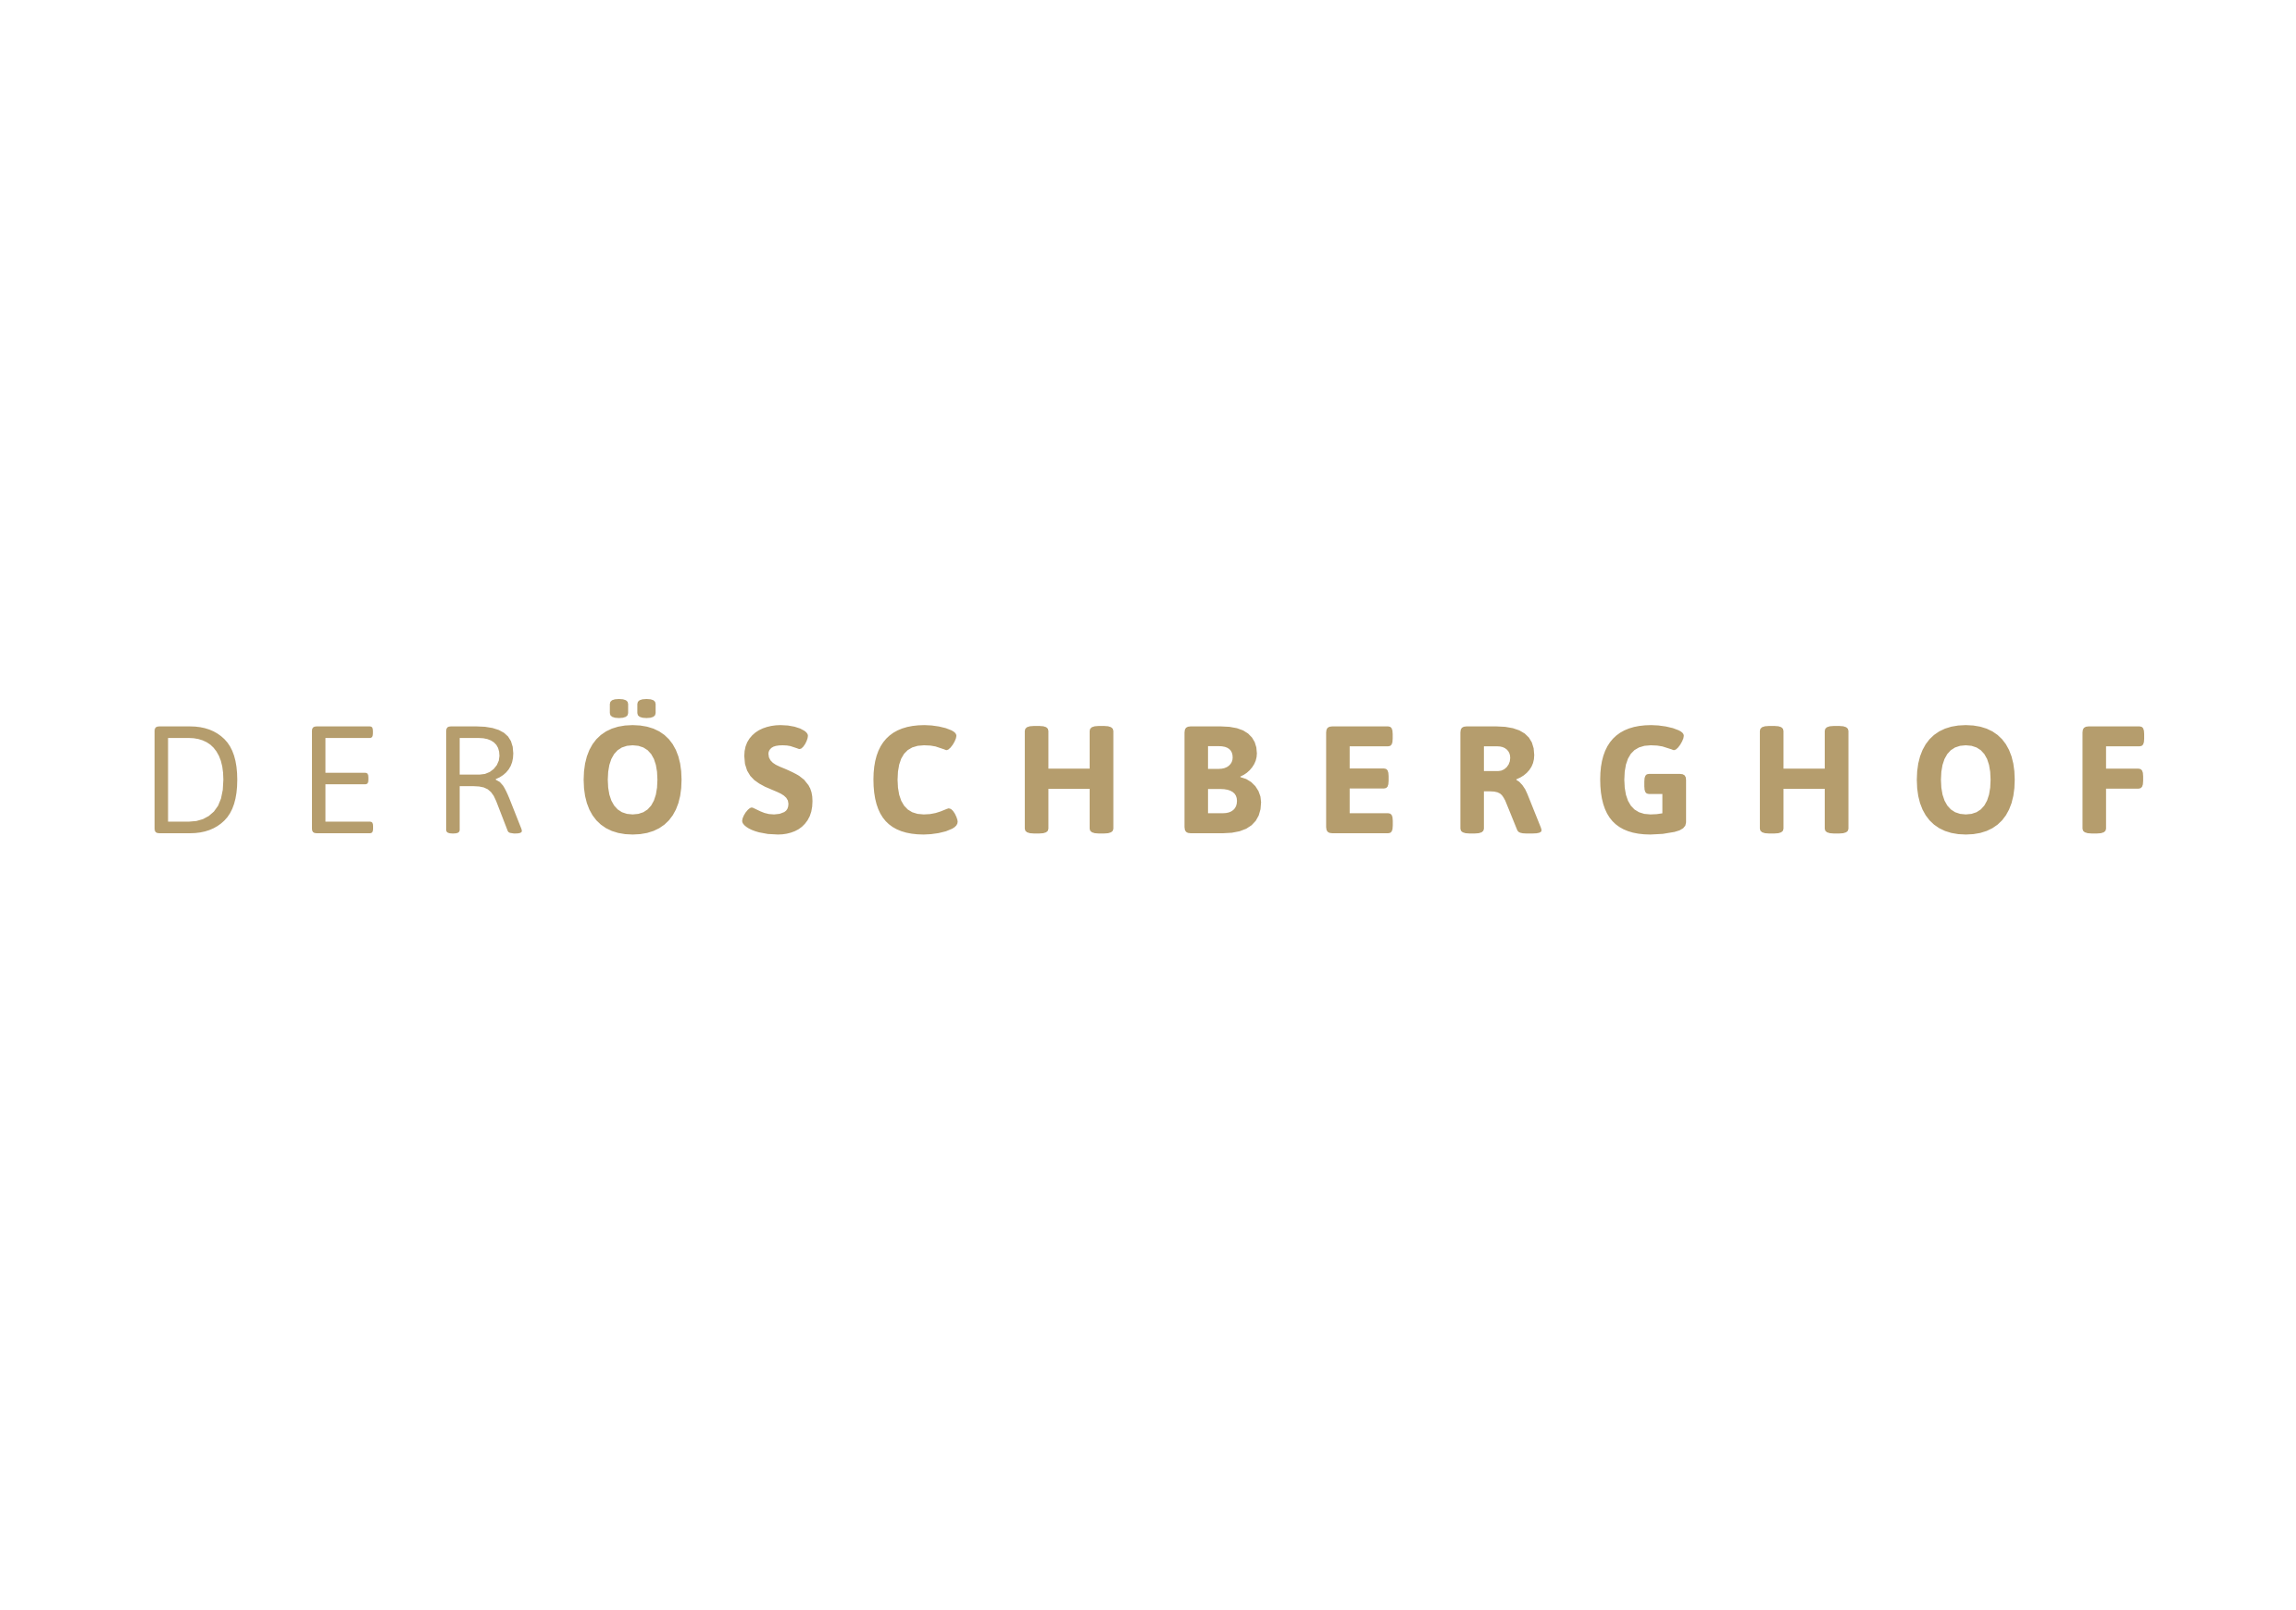 Der Öschberghof PNG Logo